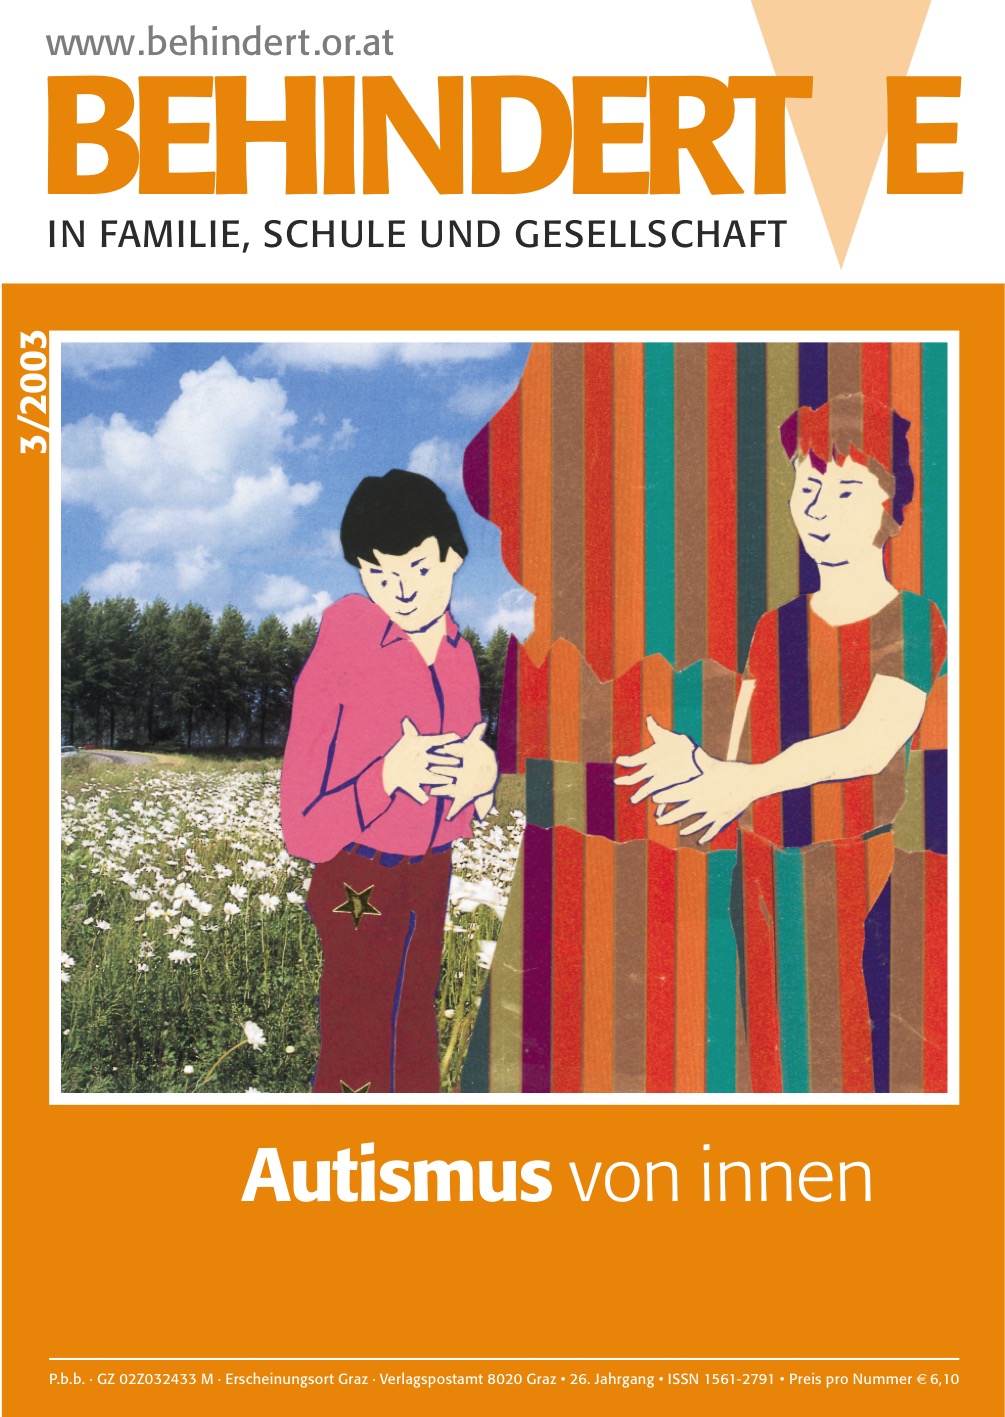 Titelbild der Zeitschrift BEHINDERTE MENSCHEN, Ausgabe 3/2003 "Autismus von innen"